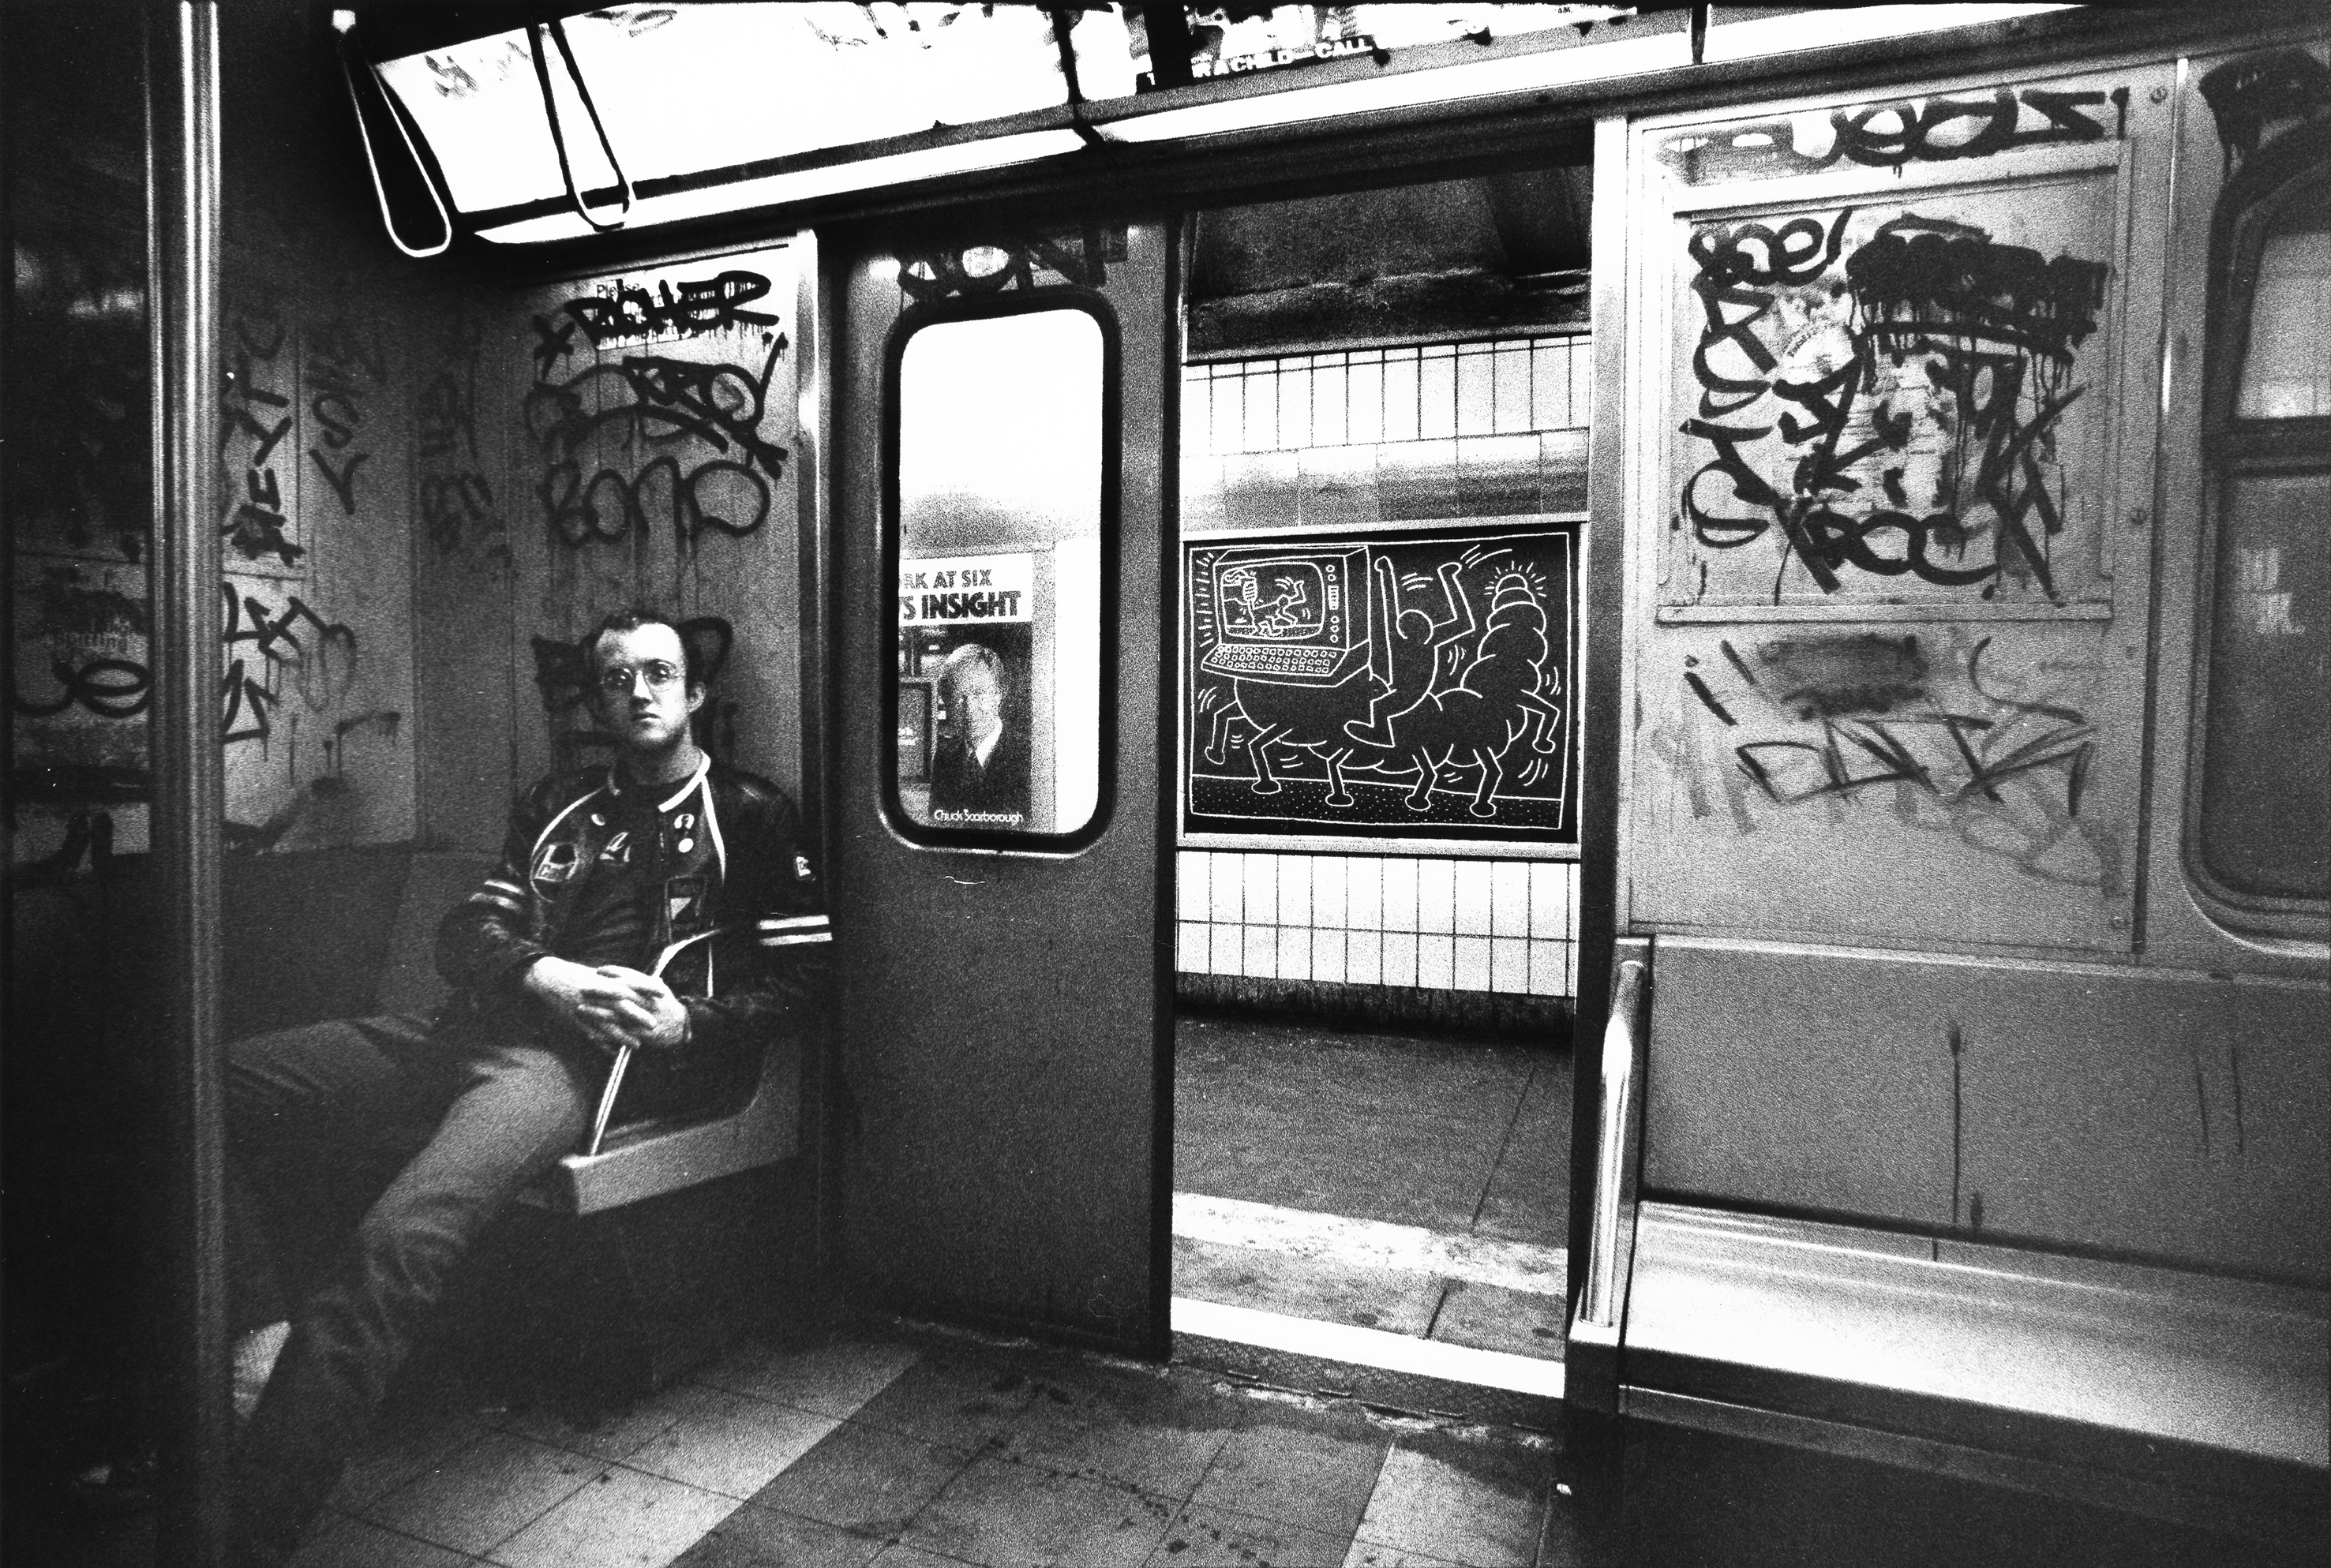 Keith Haring in Subway Car, ca. 1984